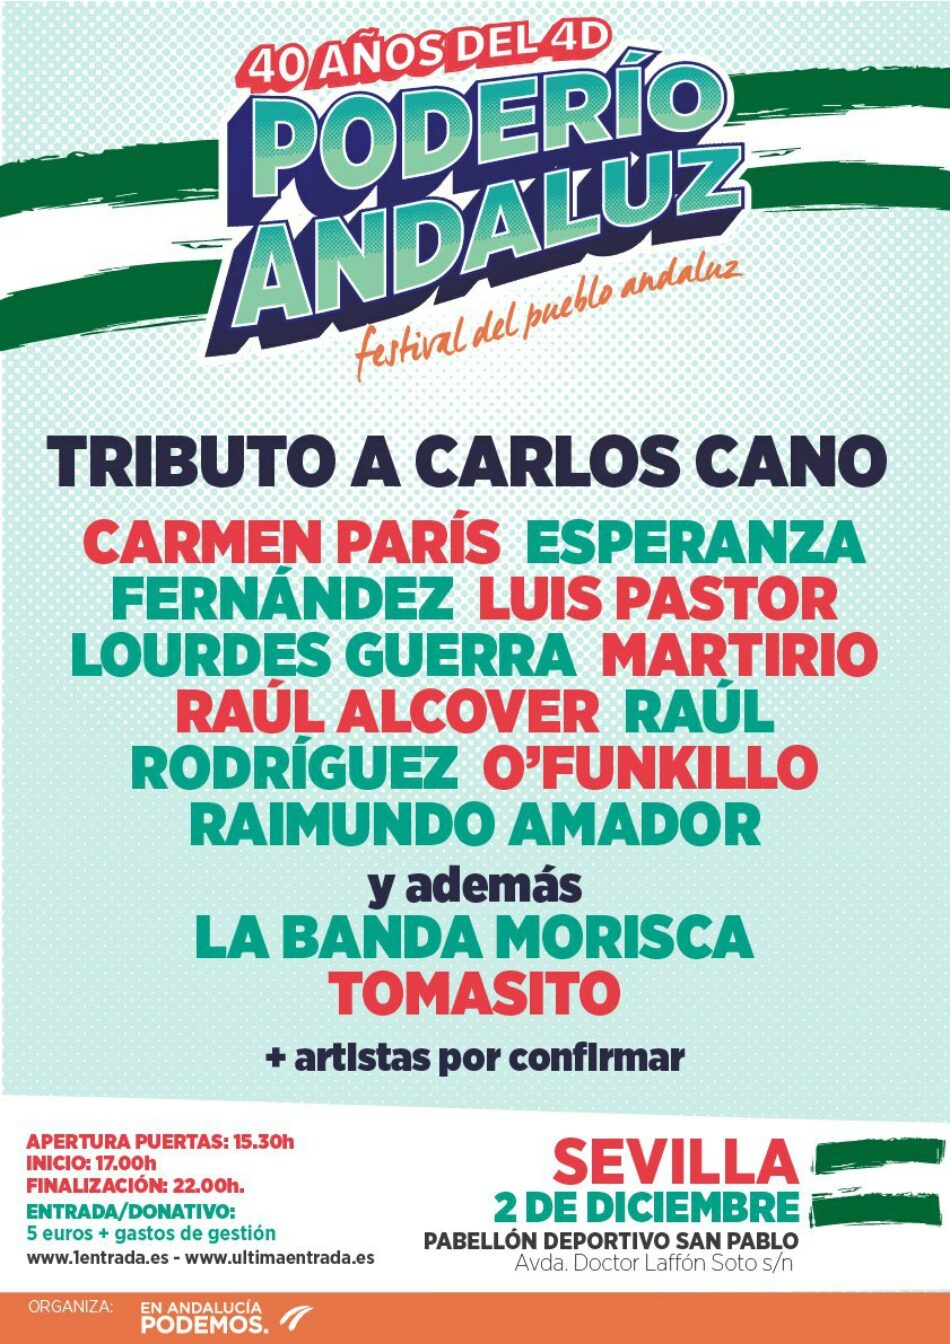 Sevilla acogerá el próximo 2 de diciembre «Poderío Andaluz. Festival del Pueblo Andaluz»